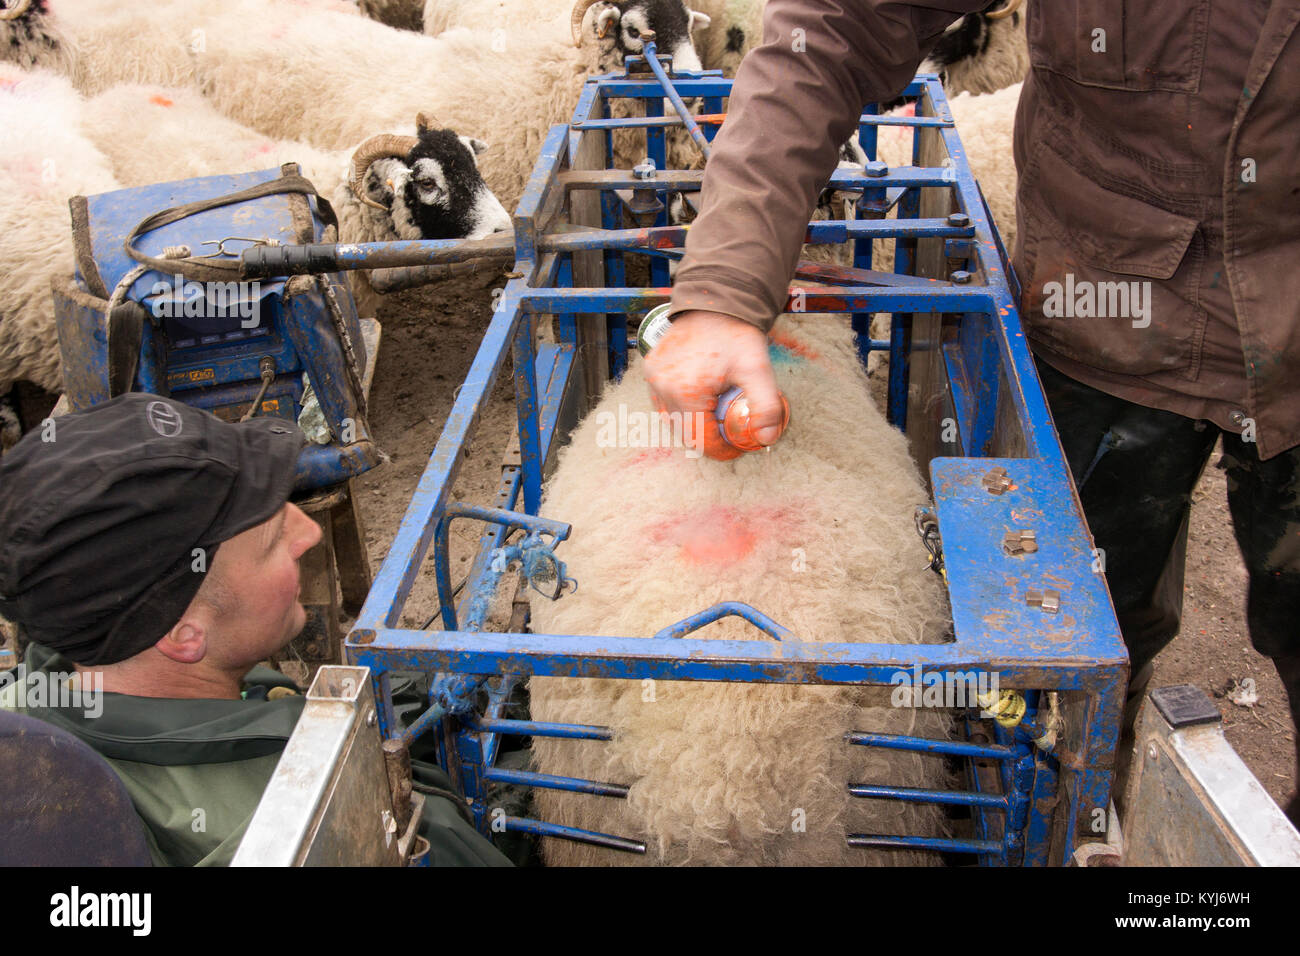 Scannen swaledale Mutterschafe mit Ultraschall Scanner, um zu sehen, wie viele Schafe Sie haben. Cumbria, Großbritannien. Stockfoto